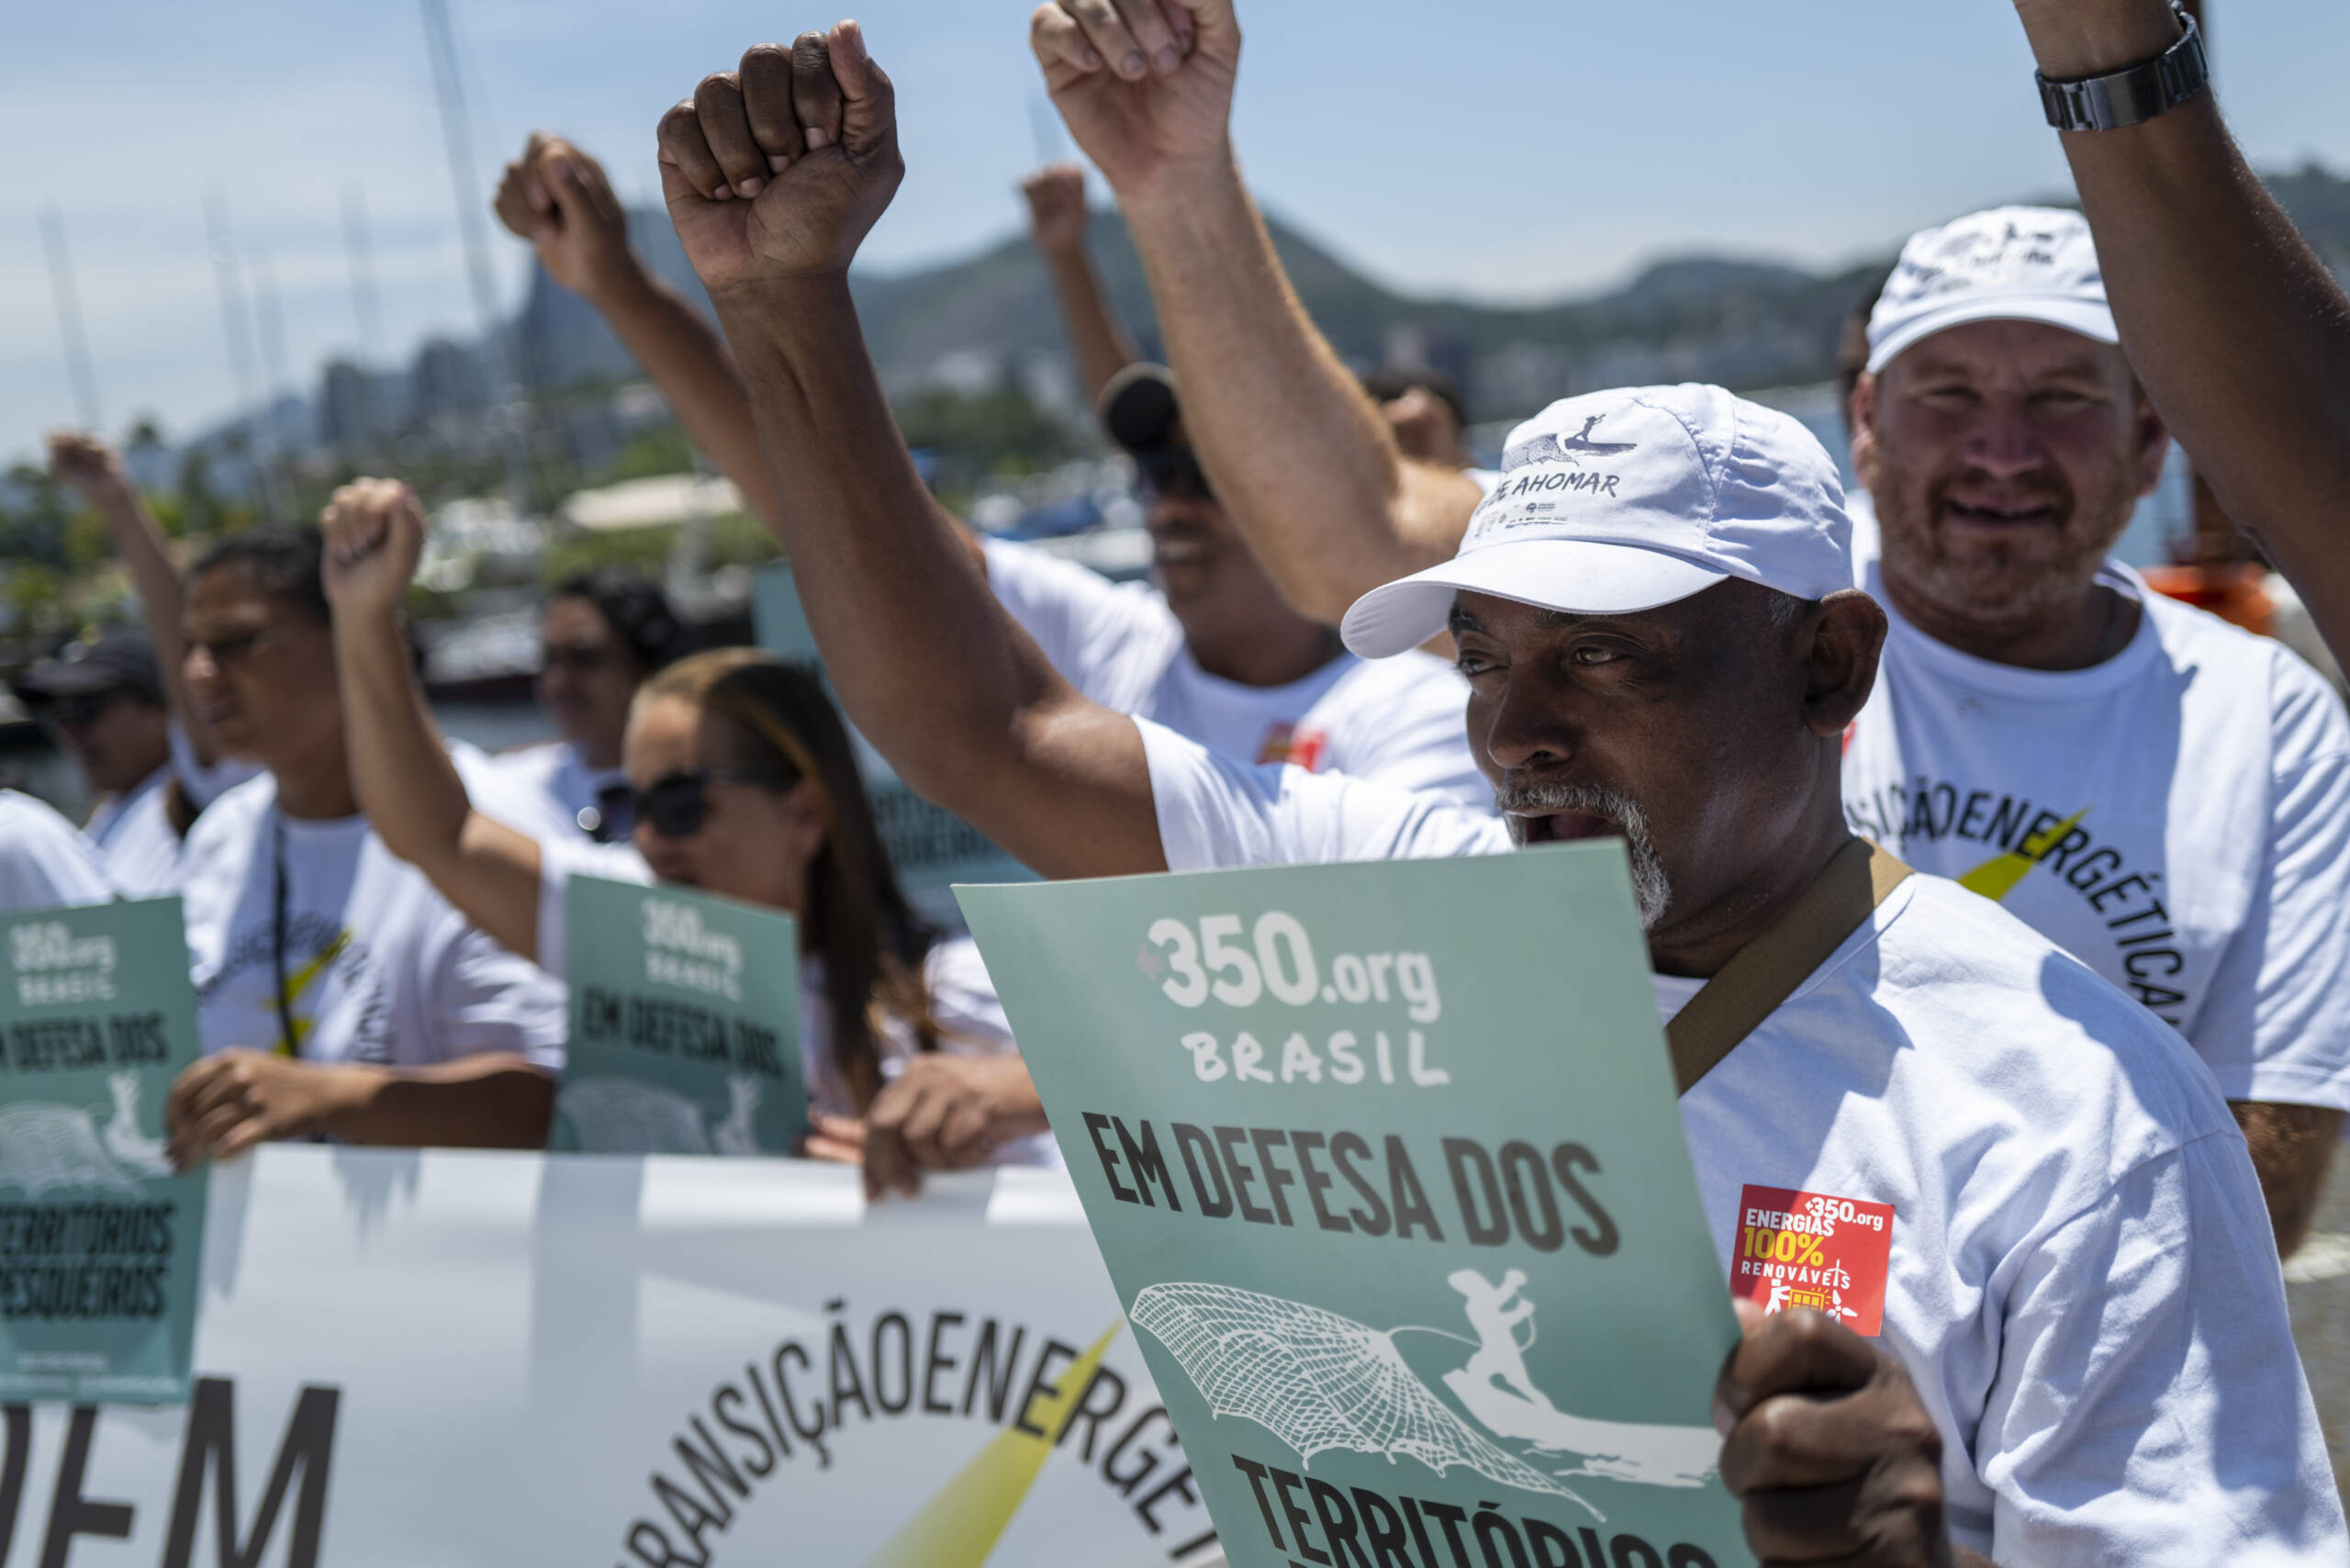 Río de Janeiro, Brasil, 3 de noviembre: pescadores tradicionales protestan frente a la bahía de Guanabara para exigir al gobierno brasileño que deje de subsidiar el petróleo y el gas e invierta más en fuentes de energía renovable. Créditos: Lucas Landau